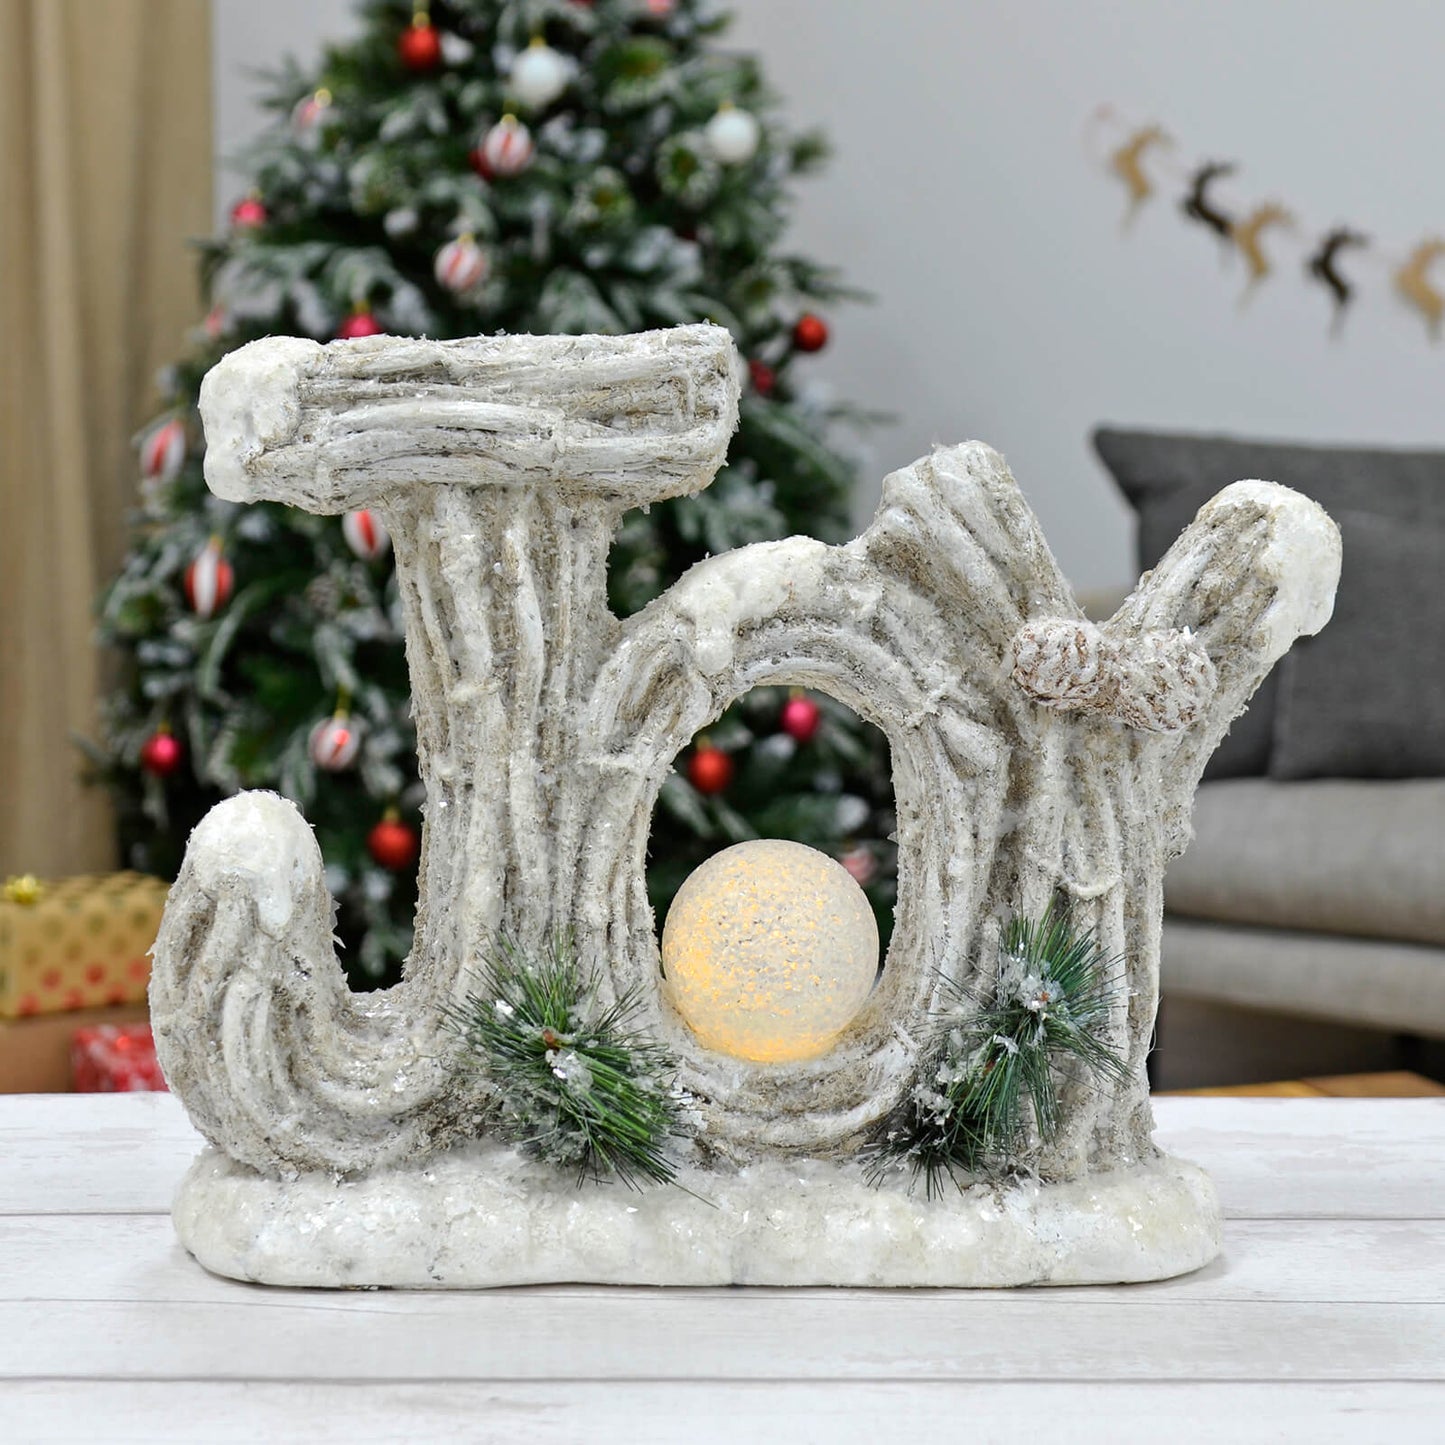 Mr Crimbo Light Up JOY Christmas Decoration Globe Ceramic 39cm - MrCrimbo.co.uk -XS7145 - -